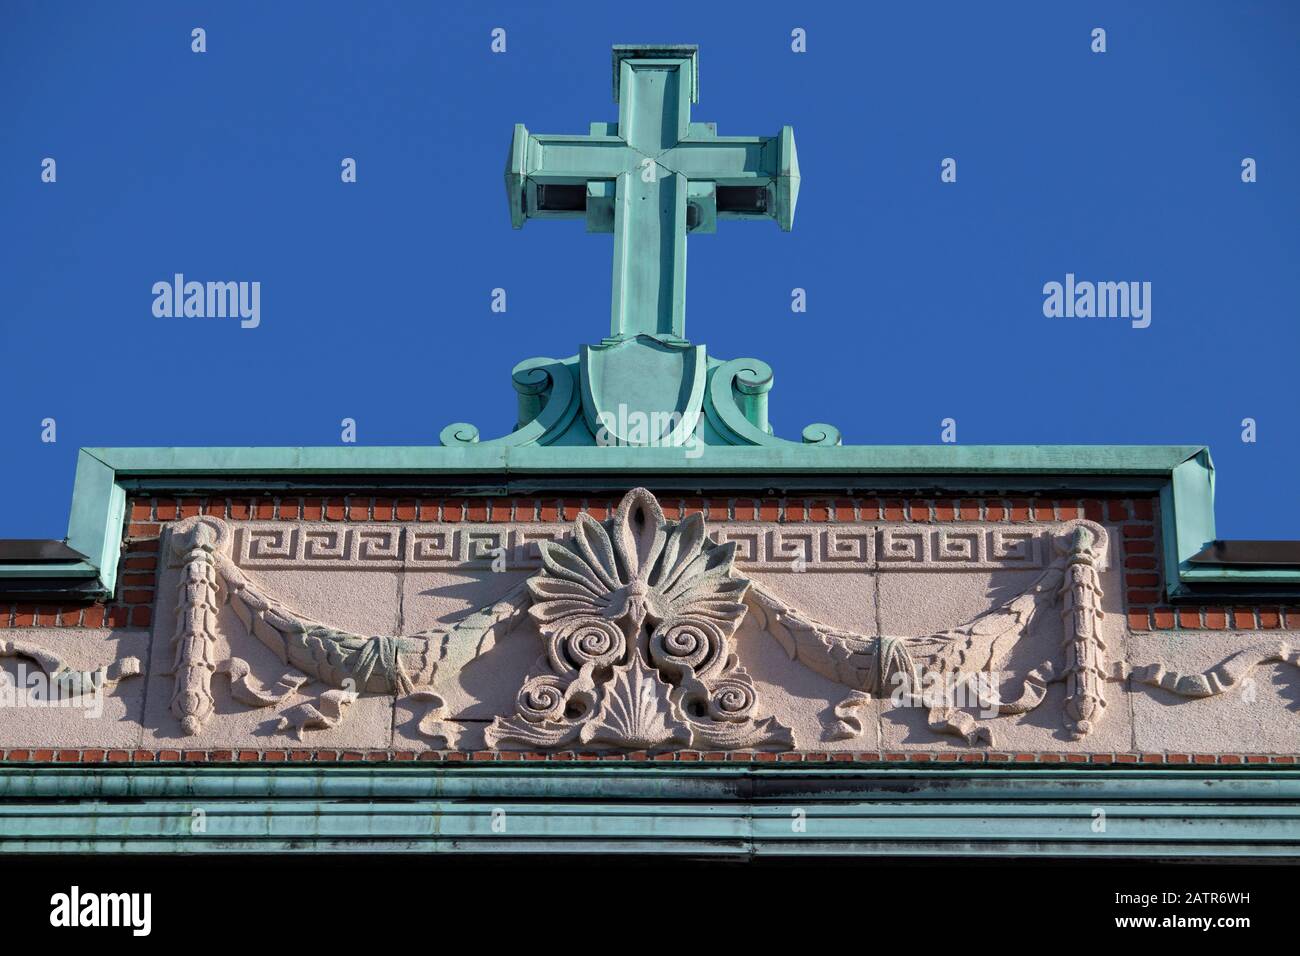 Toit avec croix et ornement décoratifs en cuivre vert oxydé, vue avant, édifice de façade, Rosemont, Montréal, Québec, Canada Banque D'Images